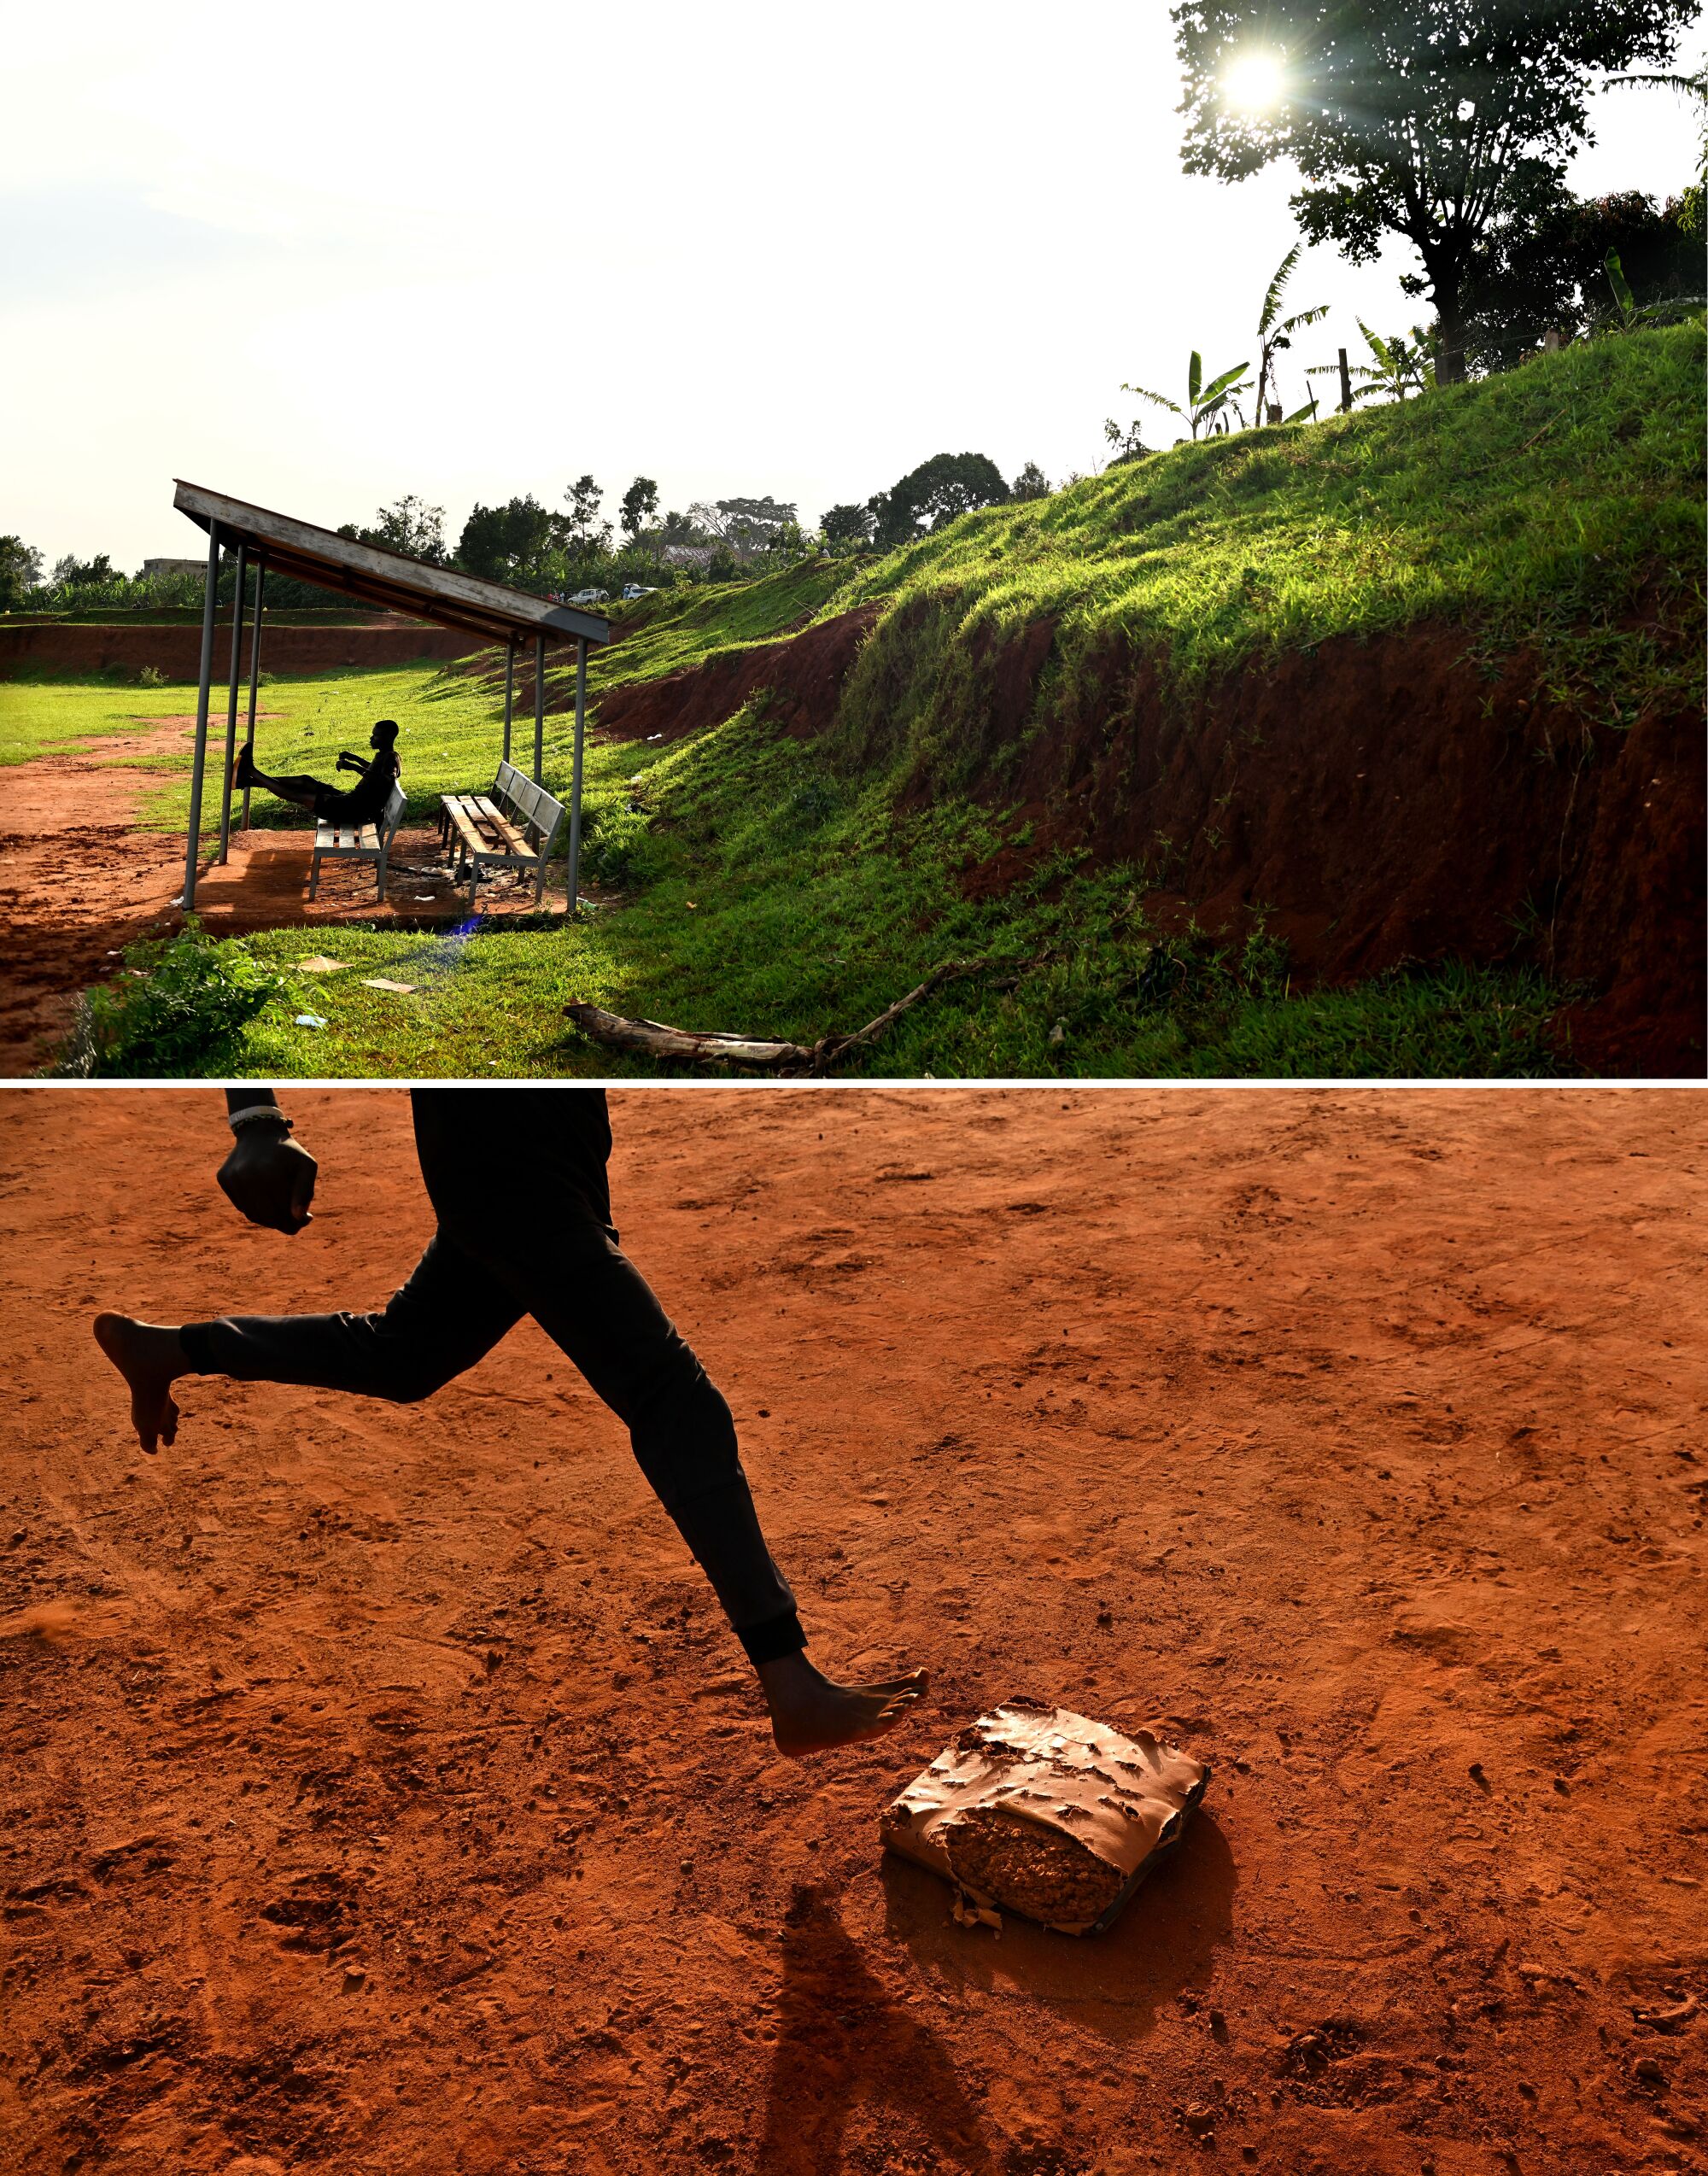 Ograniczone zasoby są ogromnym problemem dla szacowanych 2500 osób, które grają w baseball w Ugandzie